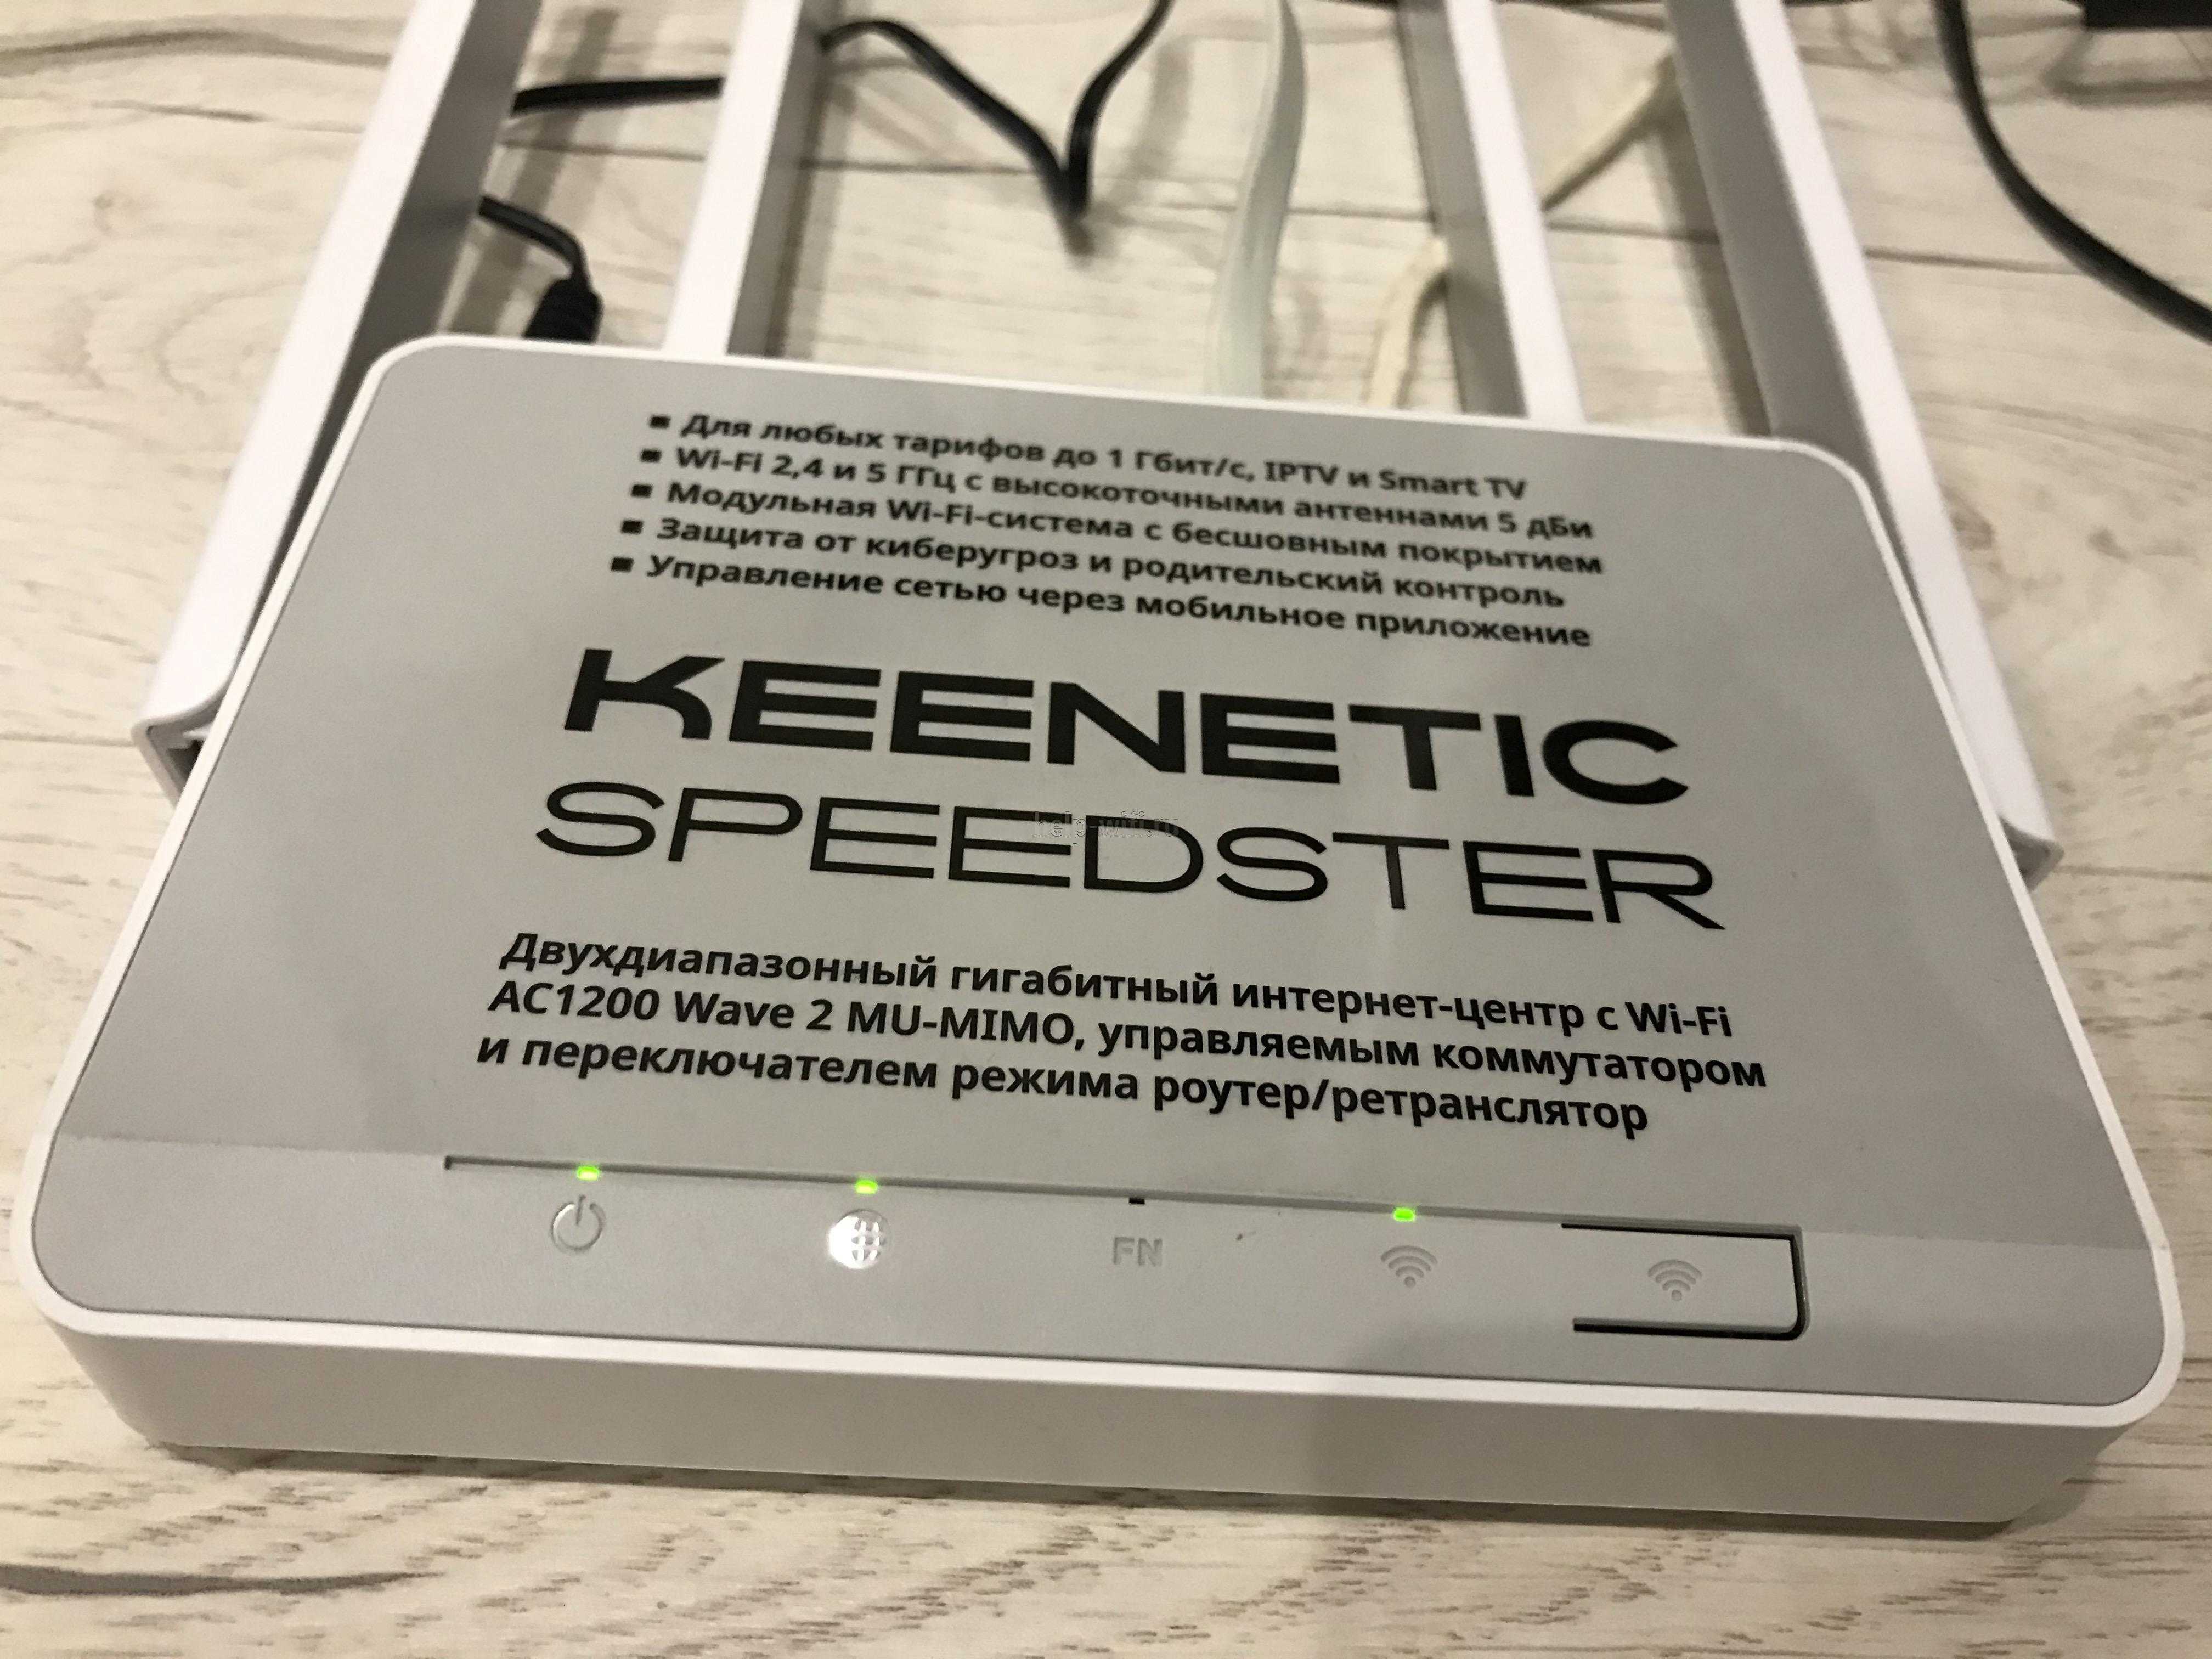 Keenetic Speedster (KN-3010) - короткий но максимально информативный обзор Для большего удобства добавлены характеристики отзывы и видео